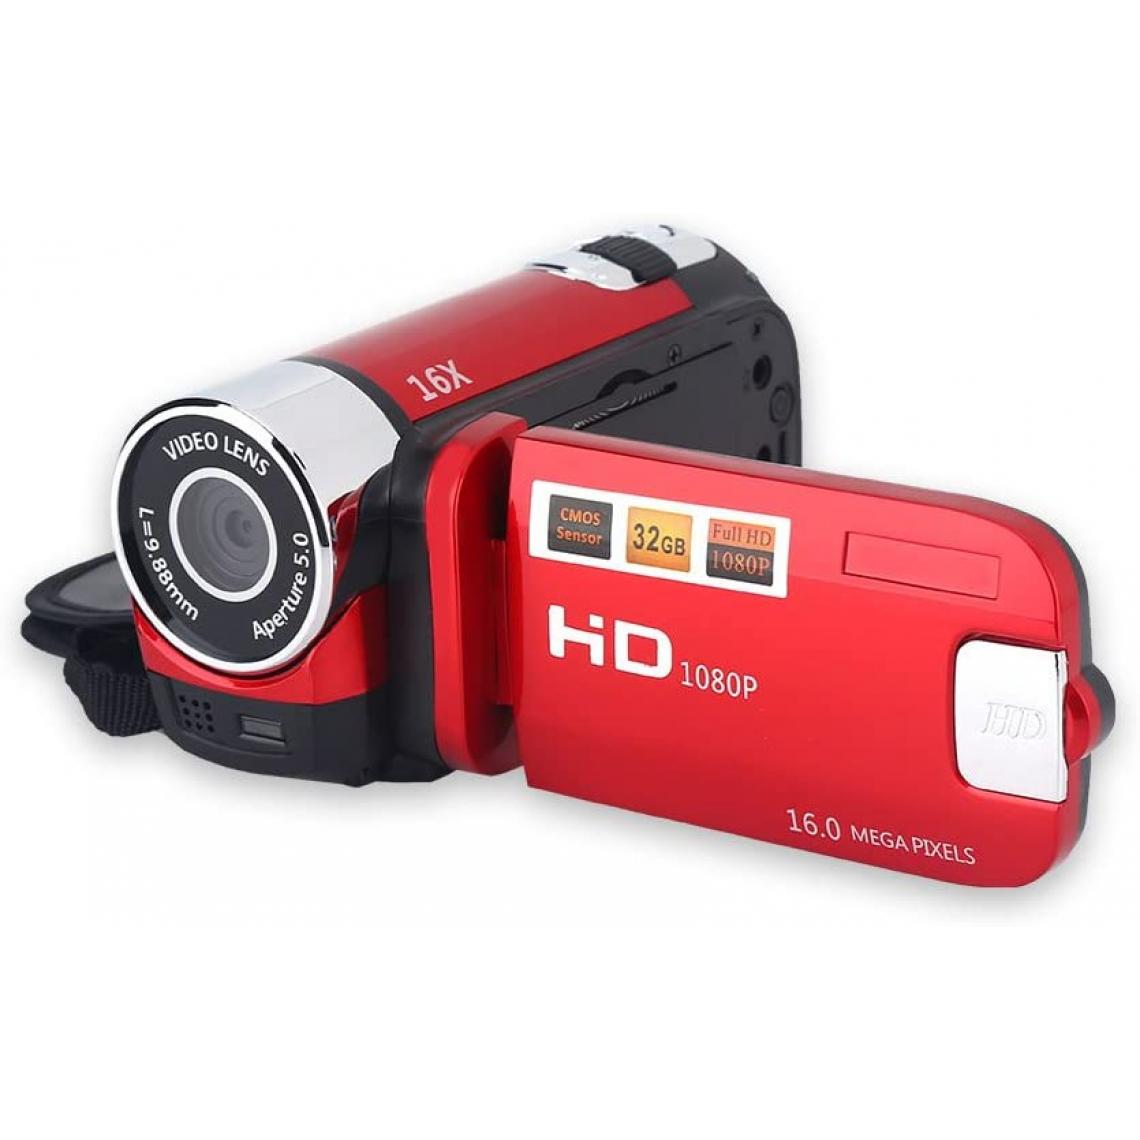 Vendos85 - Caméscope numérique Full HD de 2,7 pouces 1280 x 960 noir + 1 micro SD 32 go - Accessoires caméra